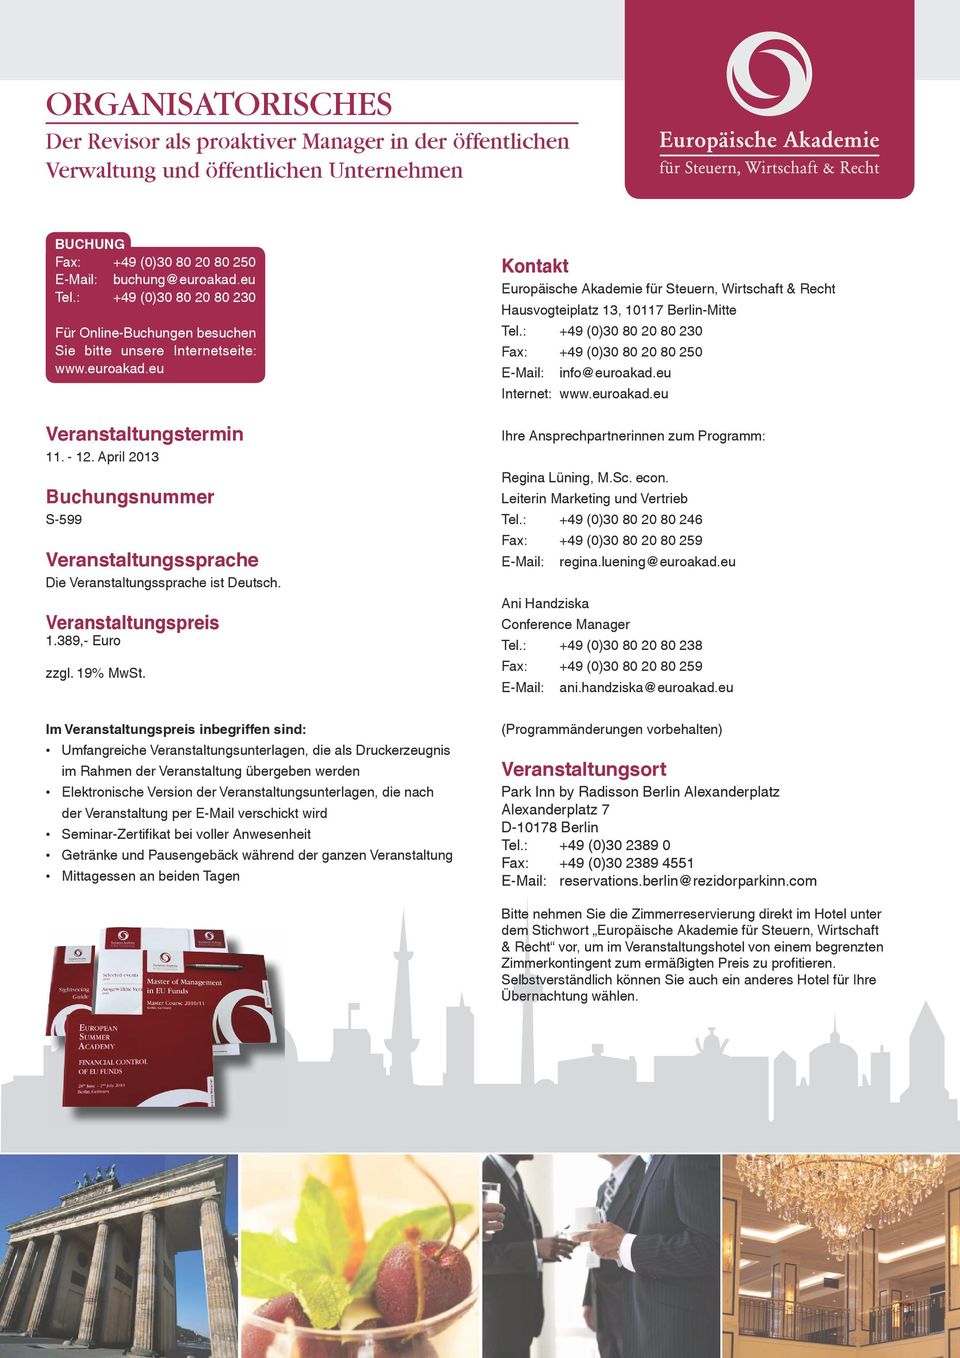 April 2013 Buchungsnummer S-599 Veranstaltungssprache Die Veranstaltungssprache ist Deutsch. Veranstaltungspreis 1.389,- Euro zzgl. 19% MwSt.